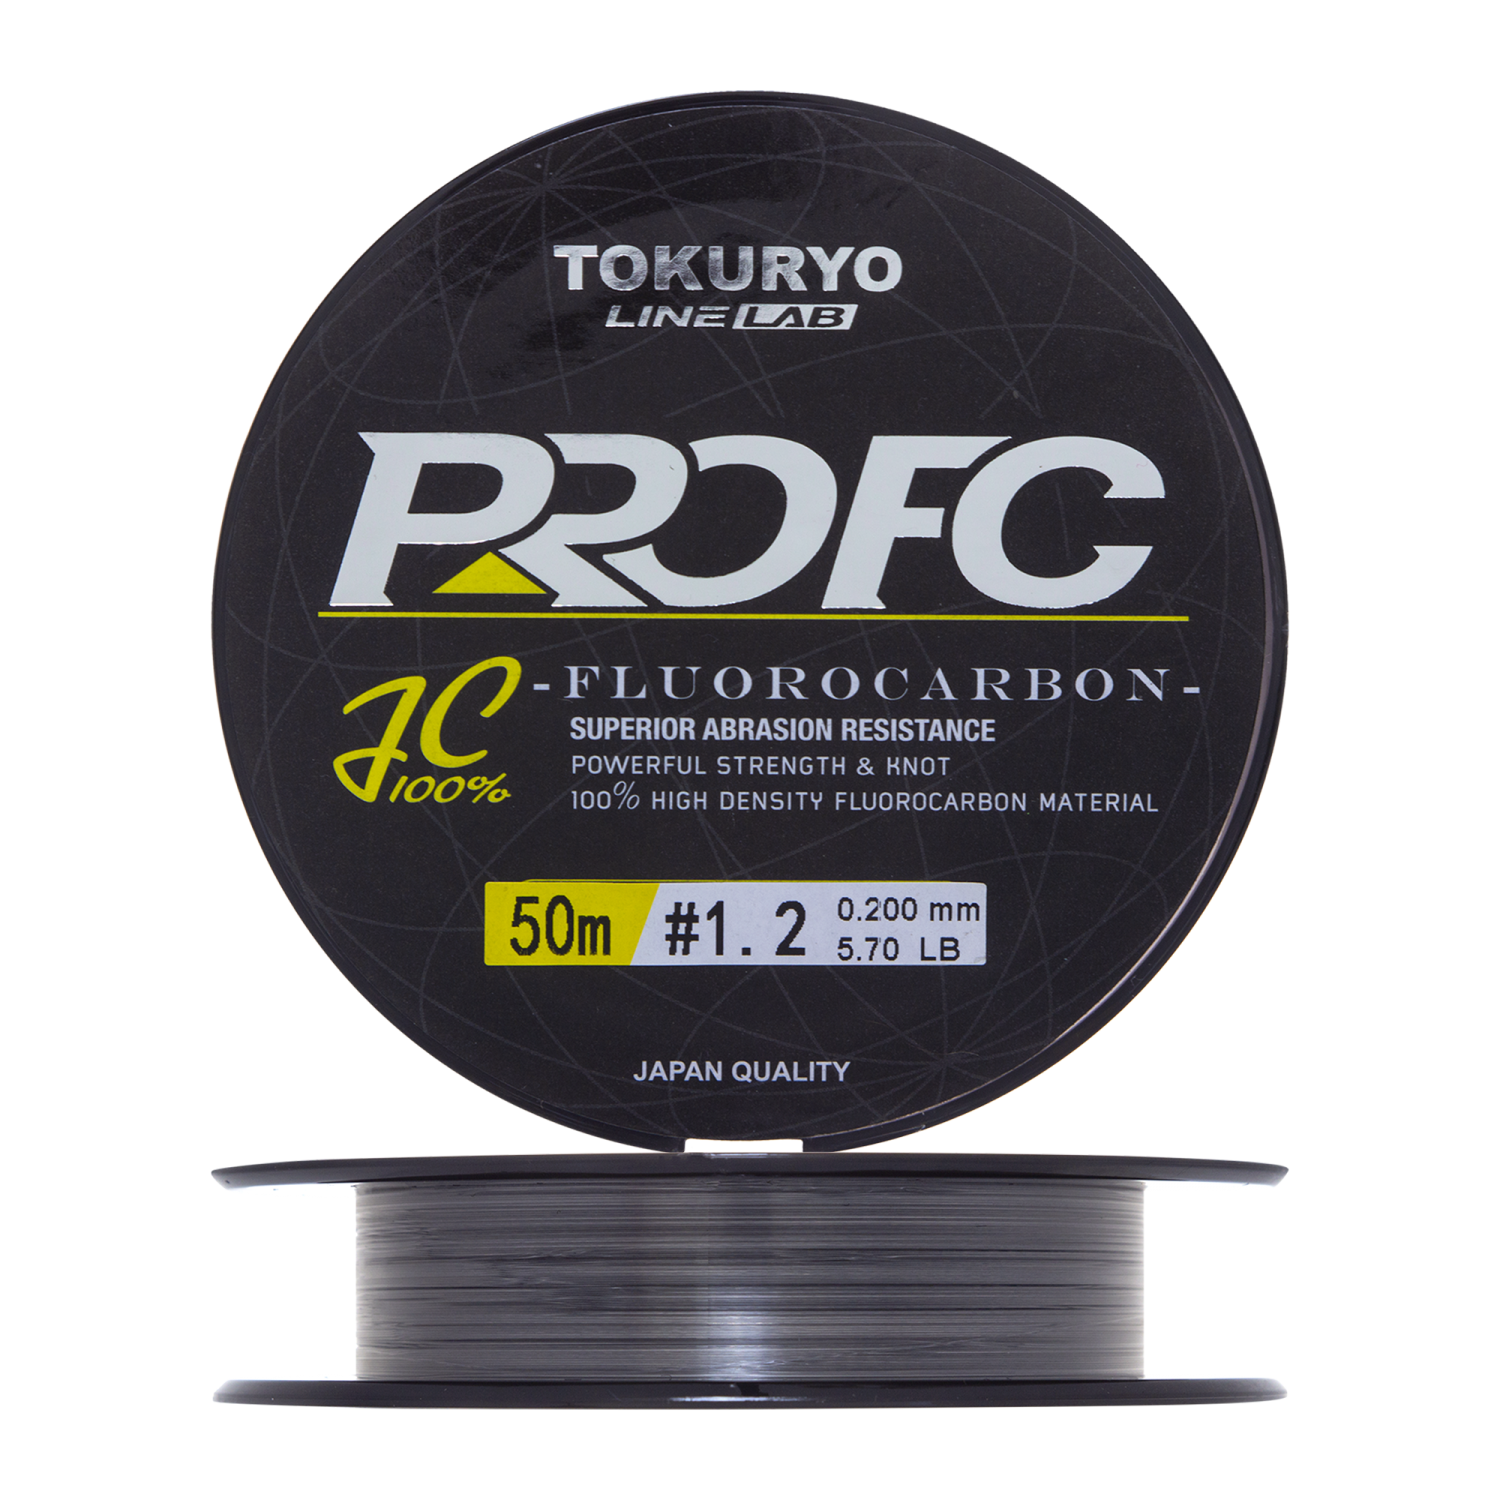 Флюорокарбон Tokuryo Fluorocarbon Pro FC #1,2 50м (clear)